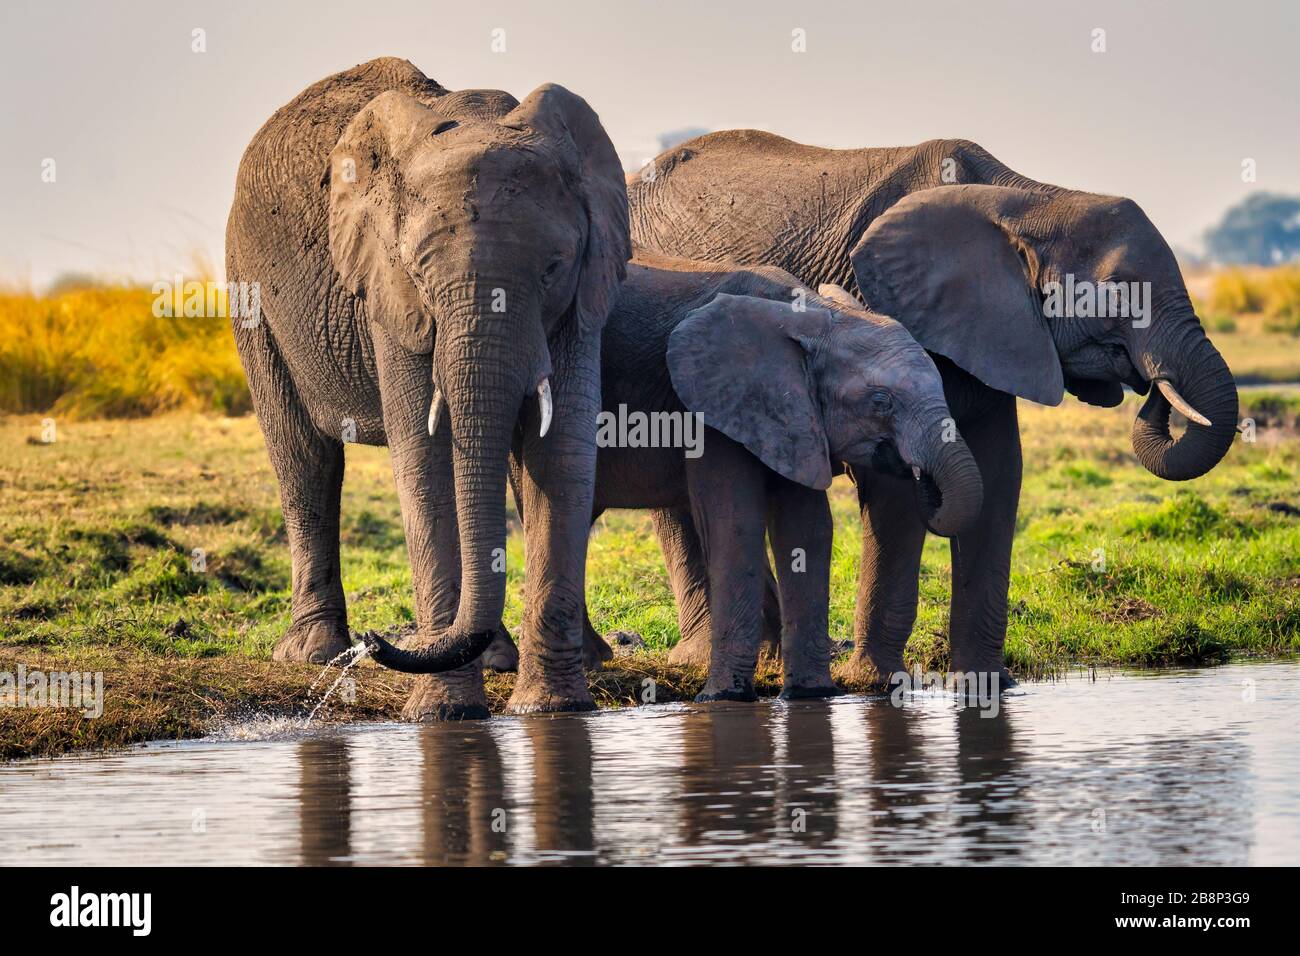 Elephant family drinking water Stock Photo